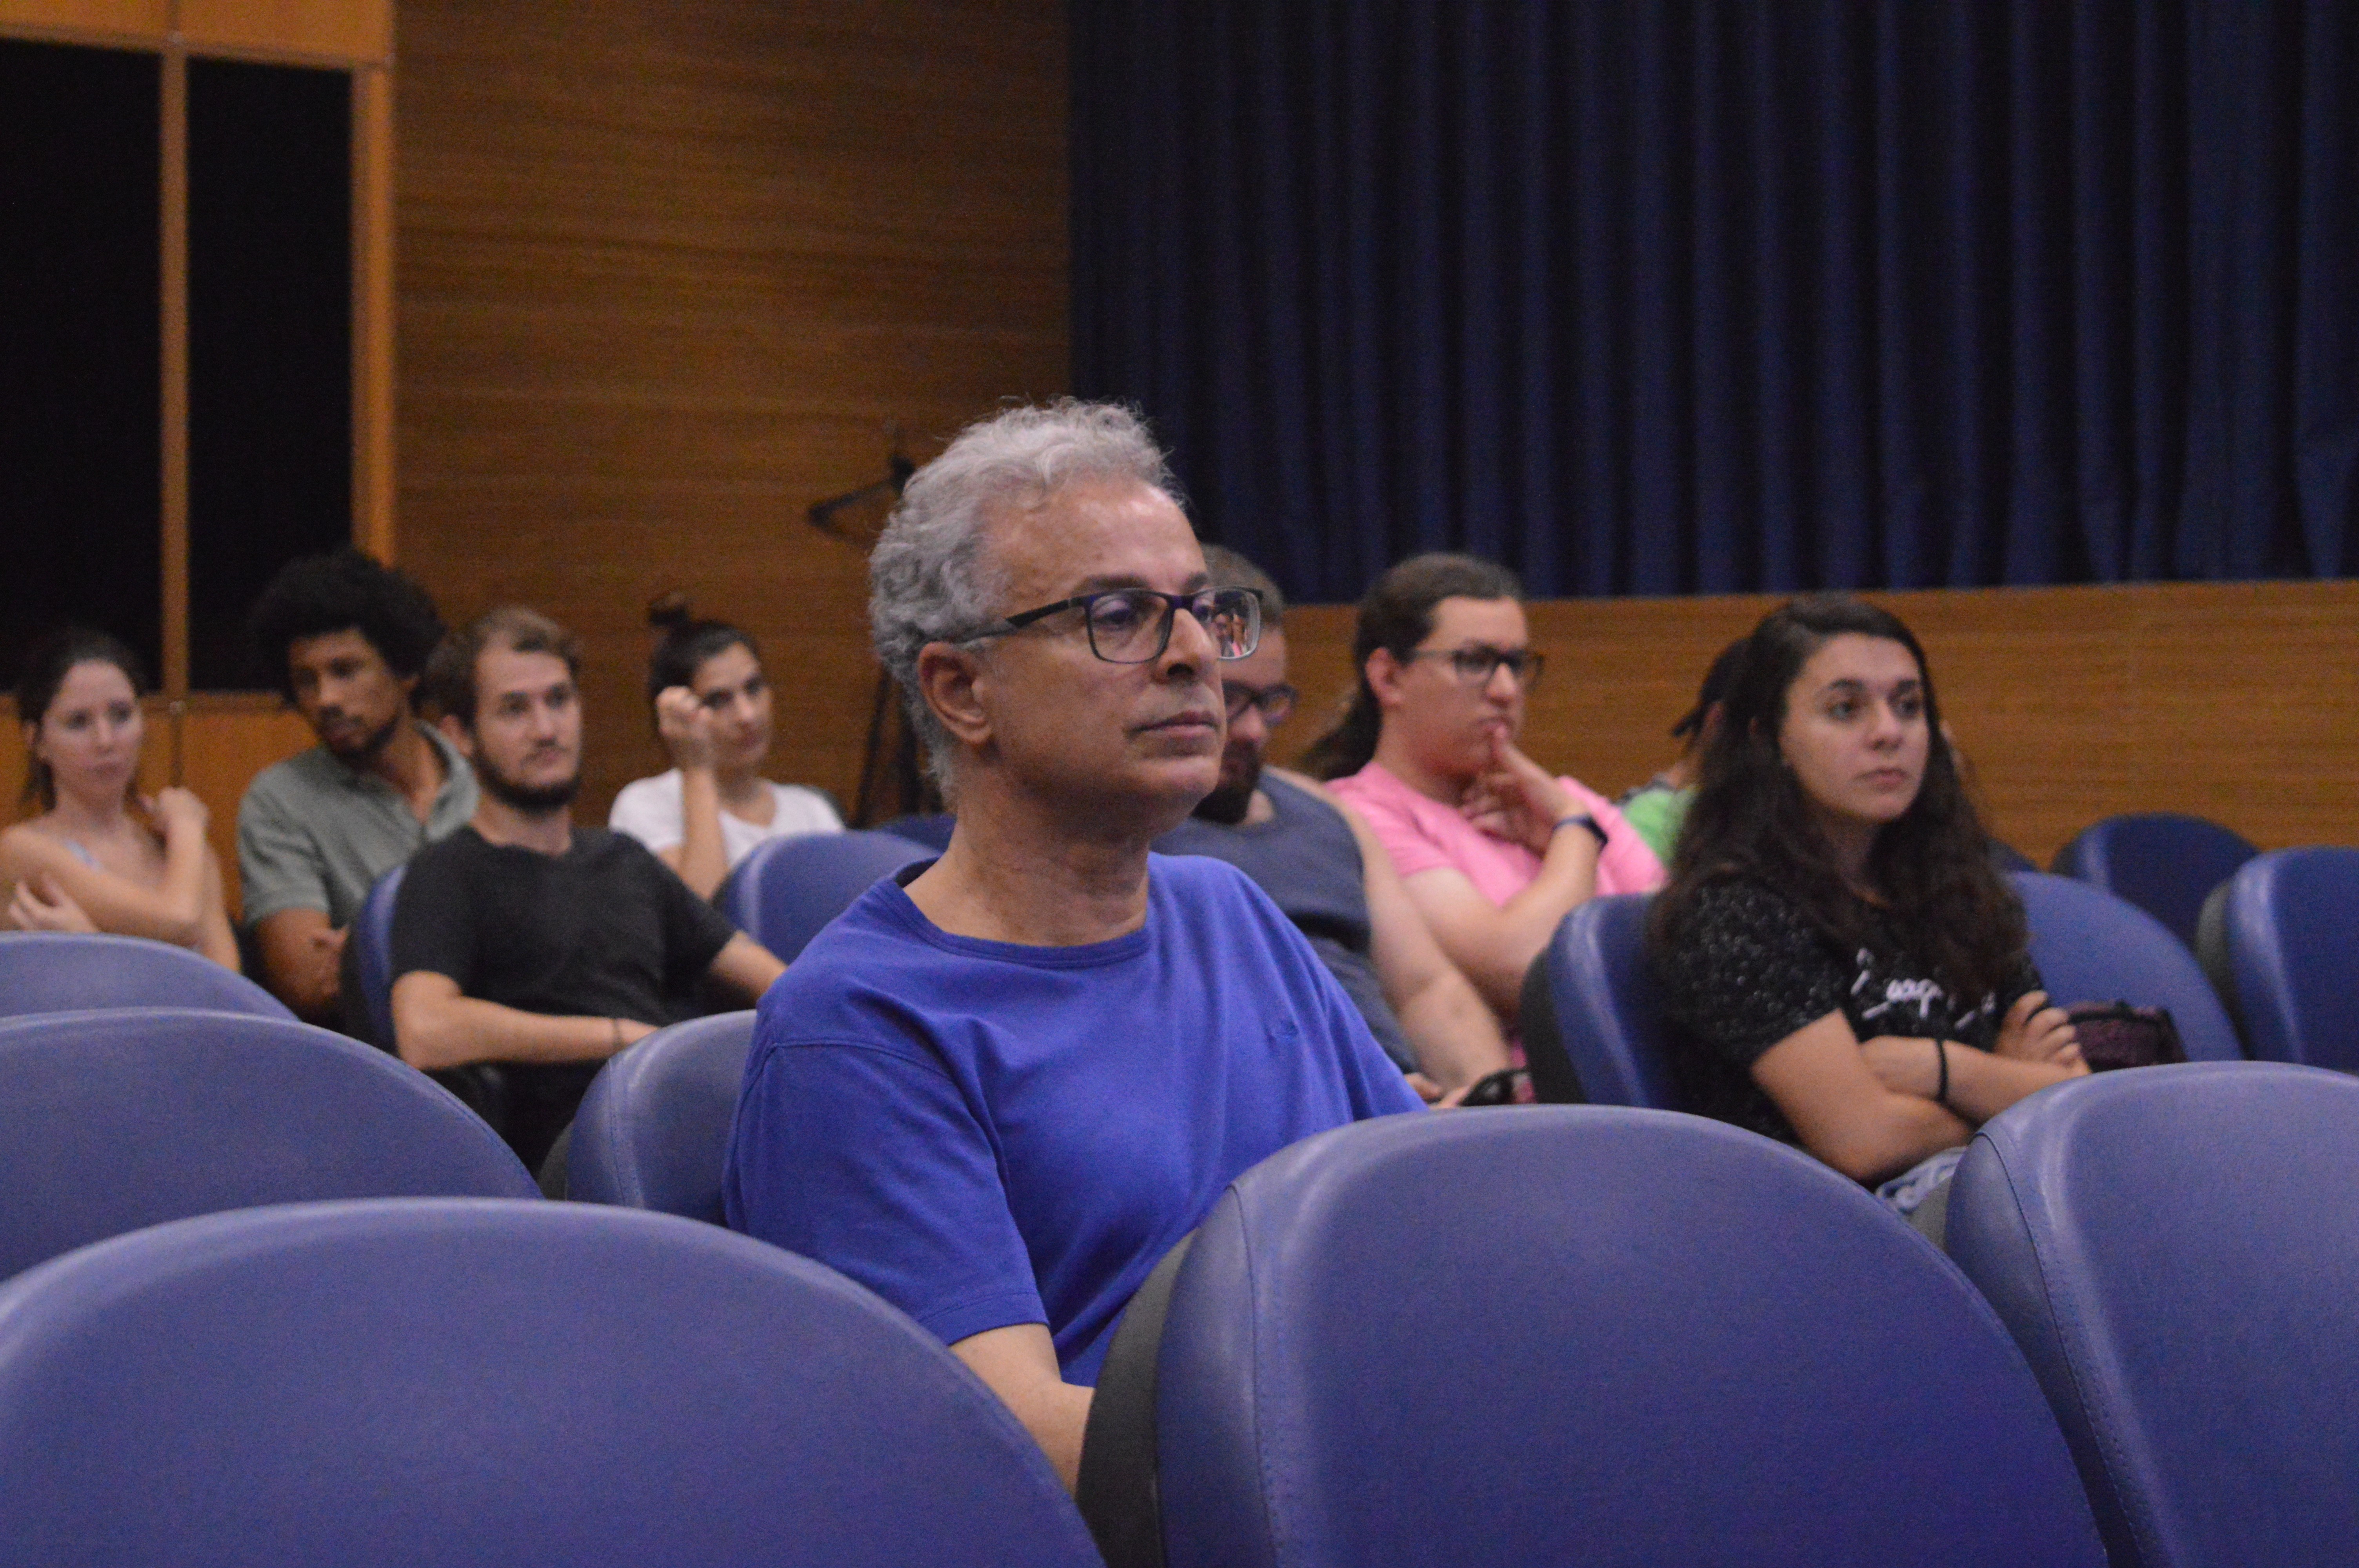 Participantes do evento. No primeiro plano imagem do Prof. Marcelo Vargas, docente do Departamento de Ciências Sociais da UFSCAR e do PPGPOL.